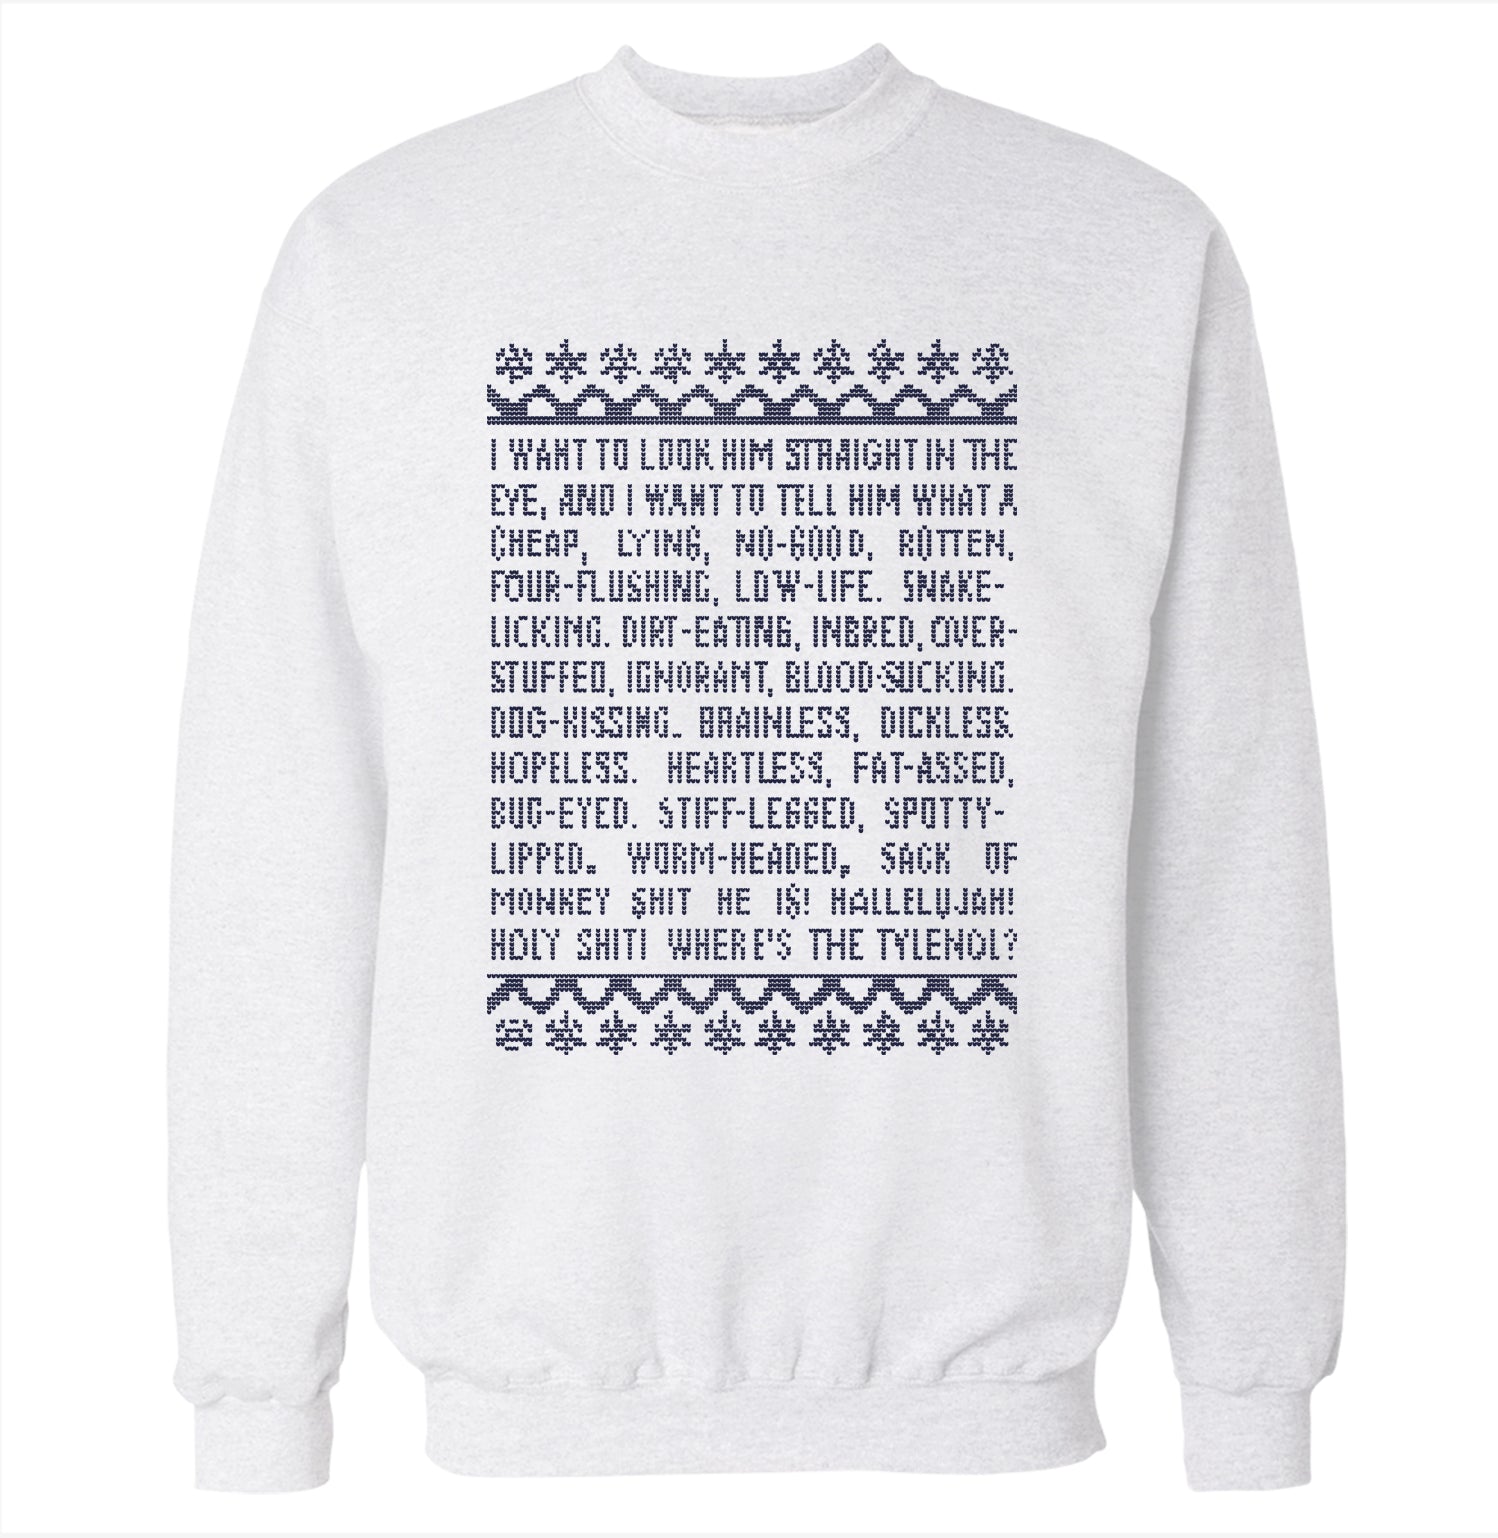 national lampoon's christmas sweatshirt